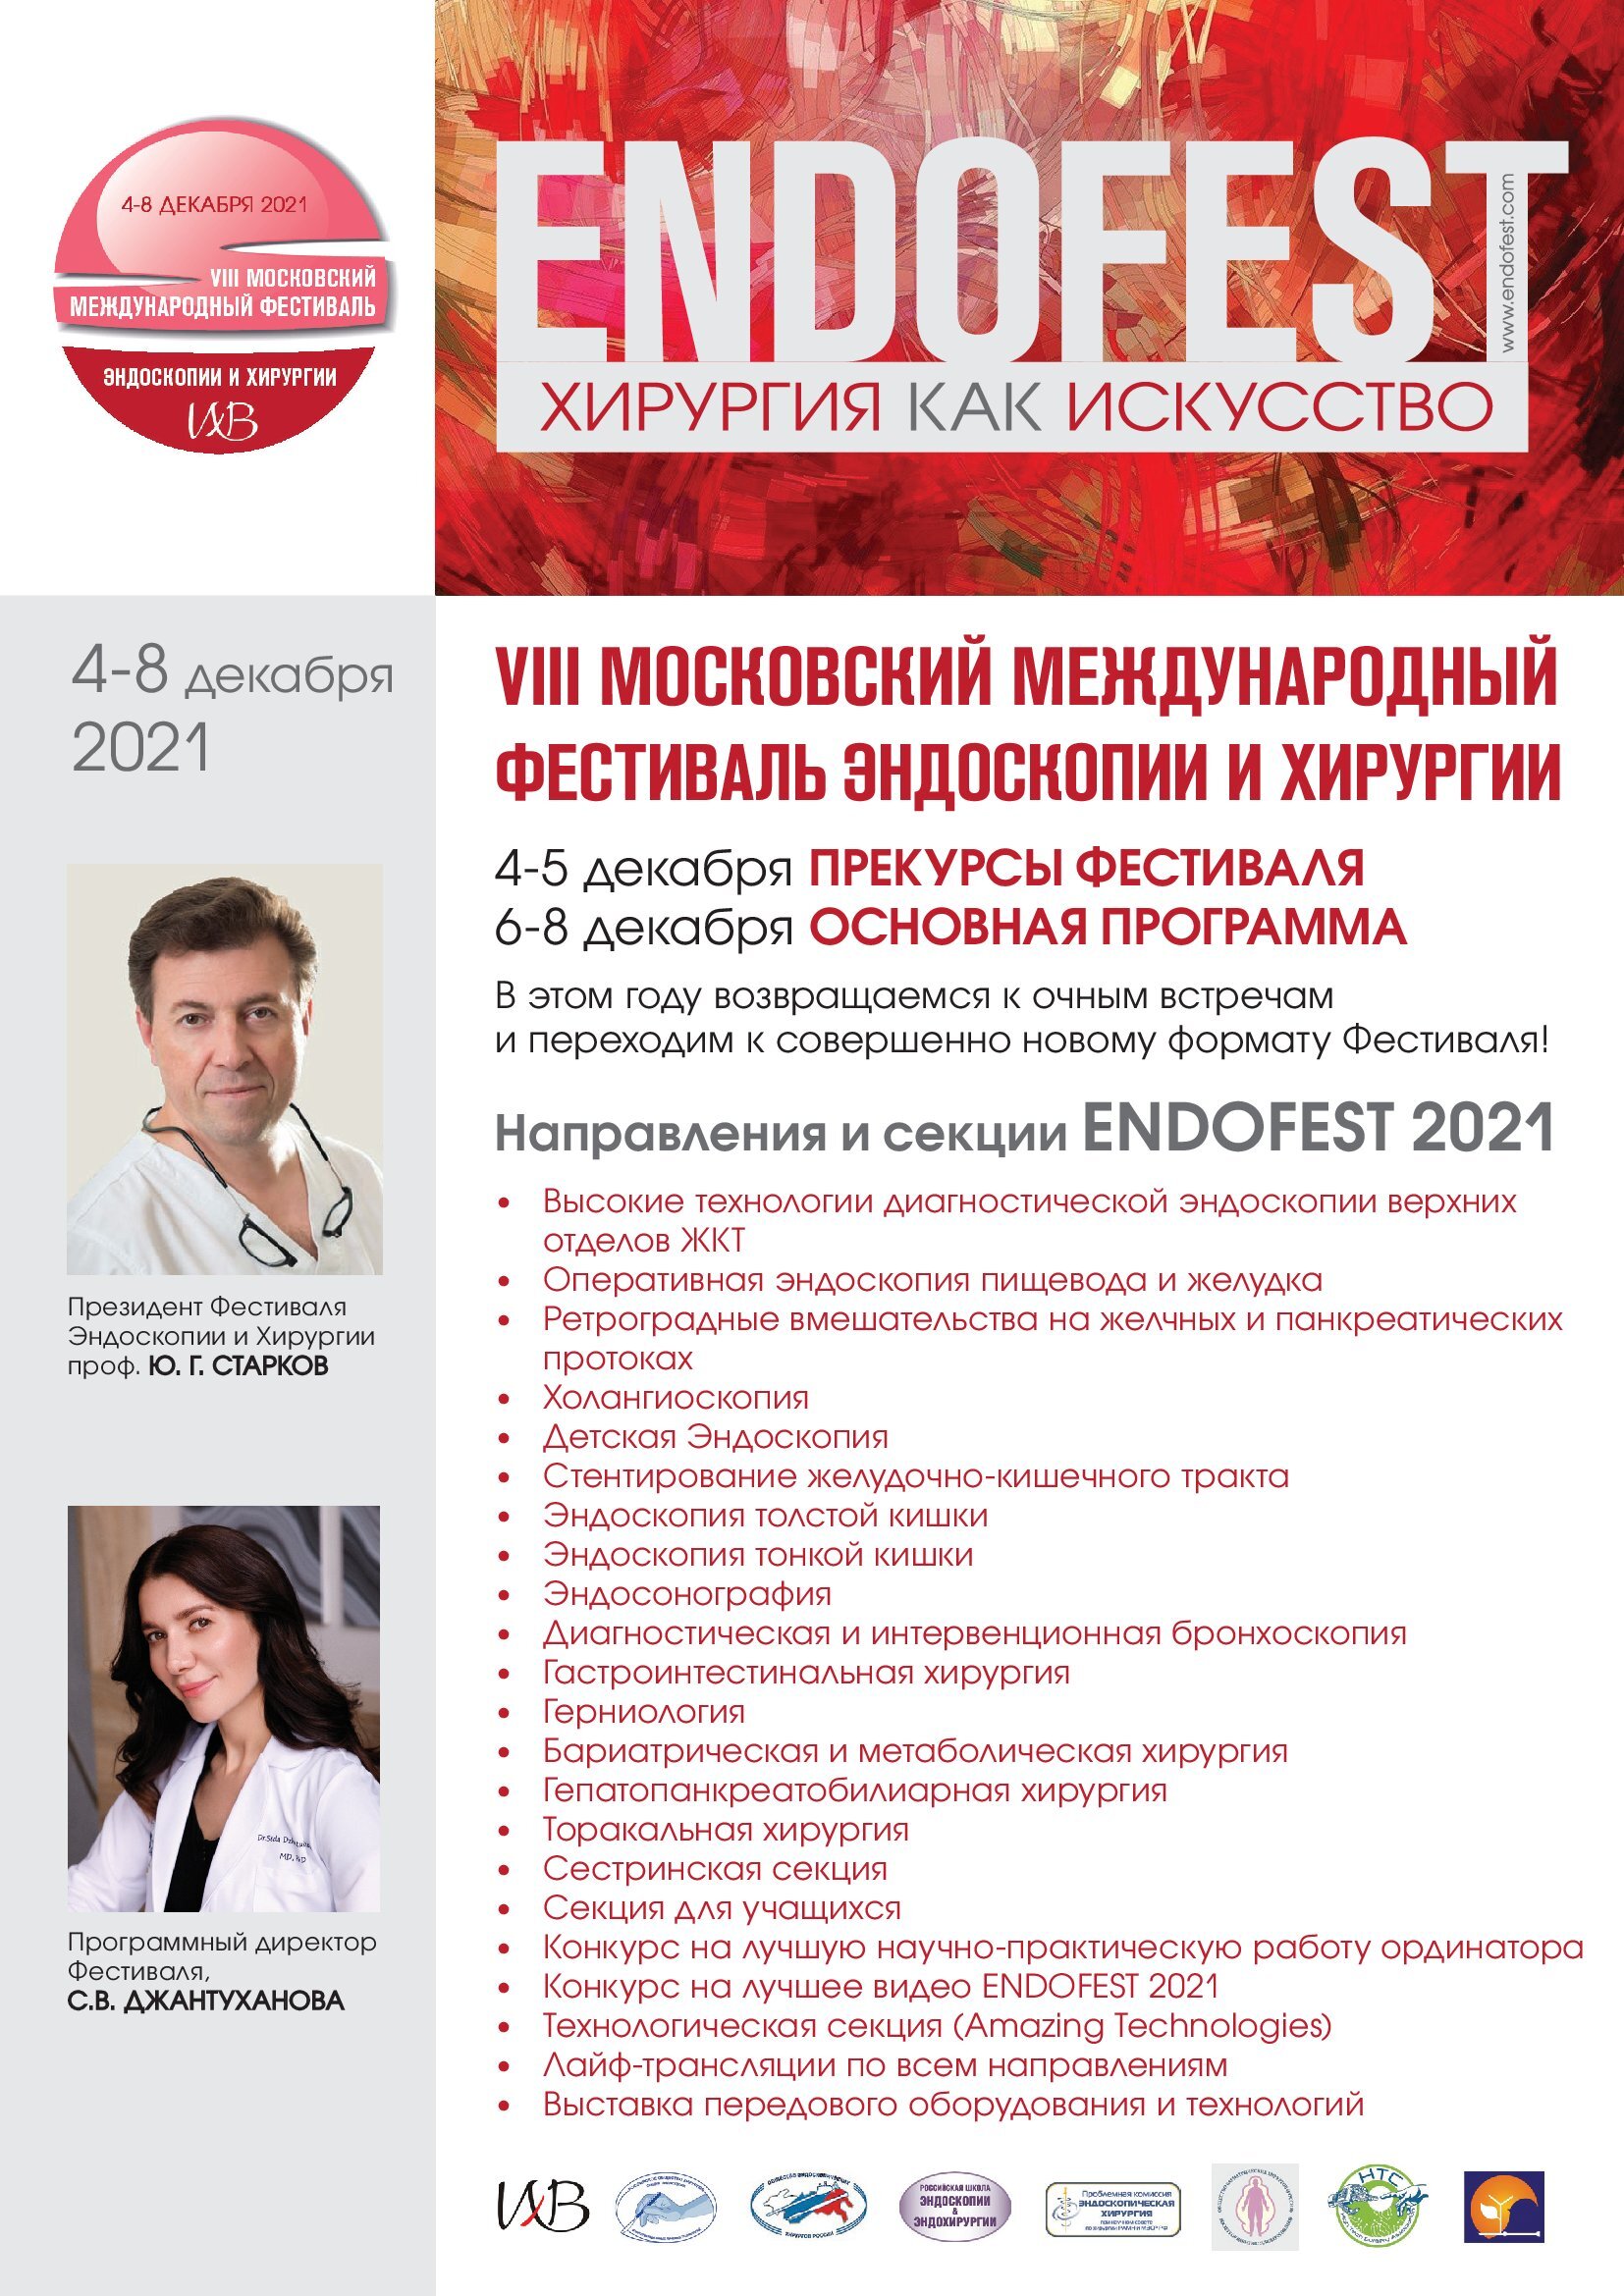 VIII Московский международный фестиваль эндоскопии и хирургии ENDOFEST-2021